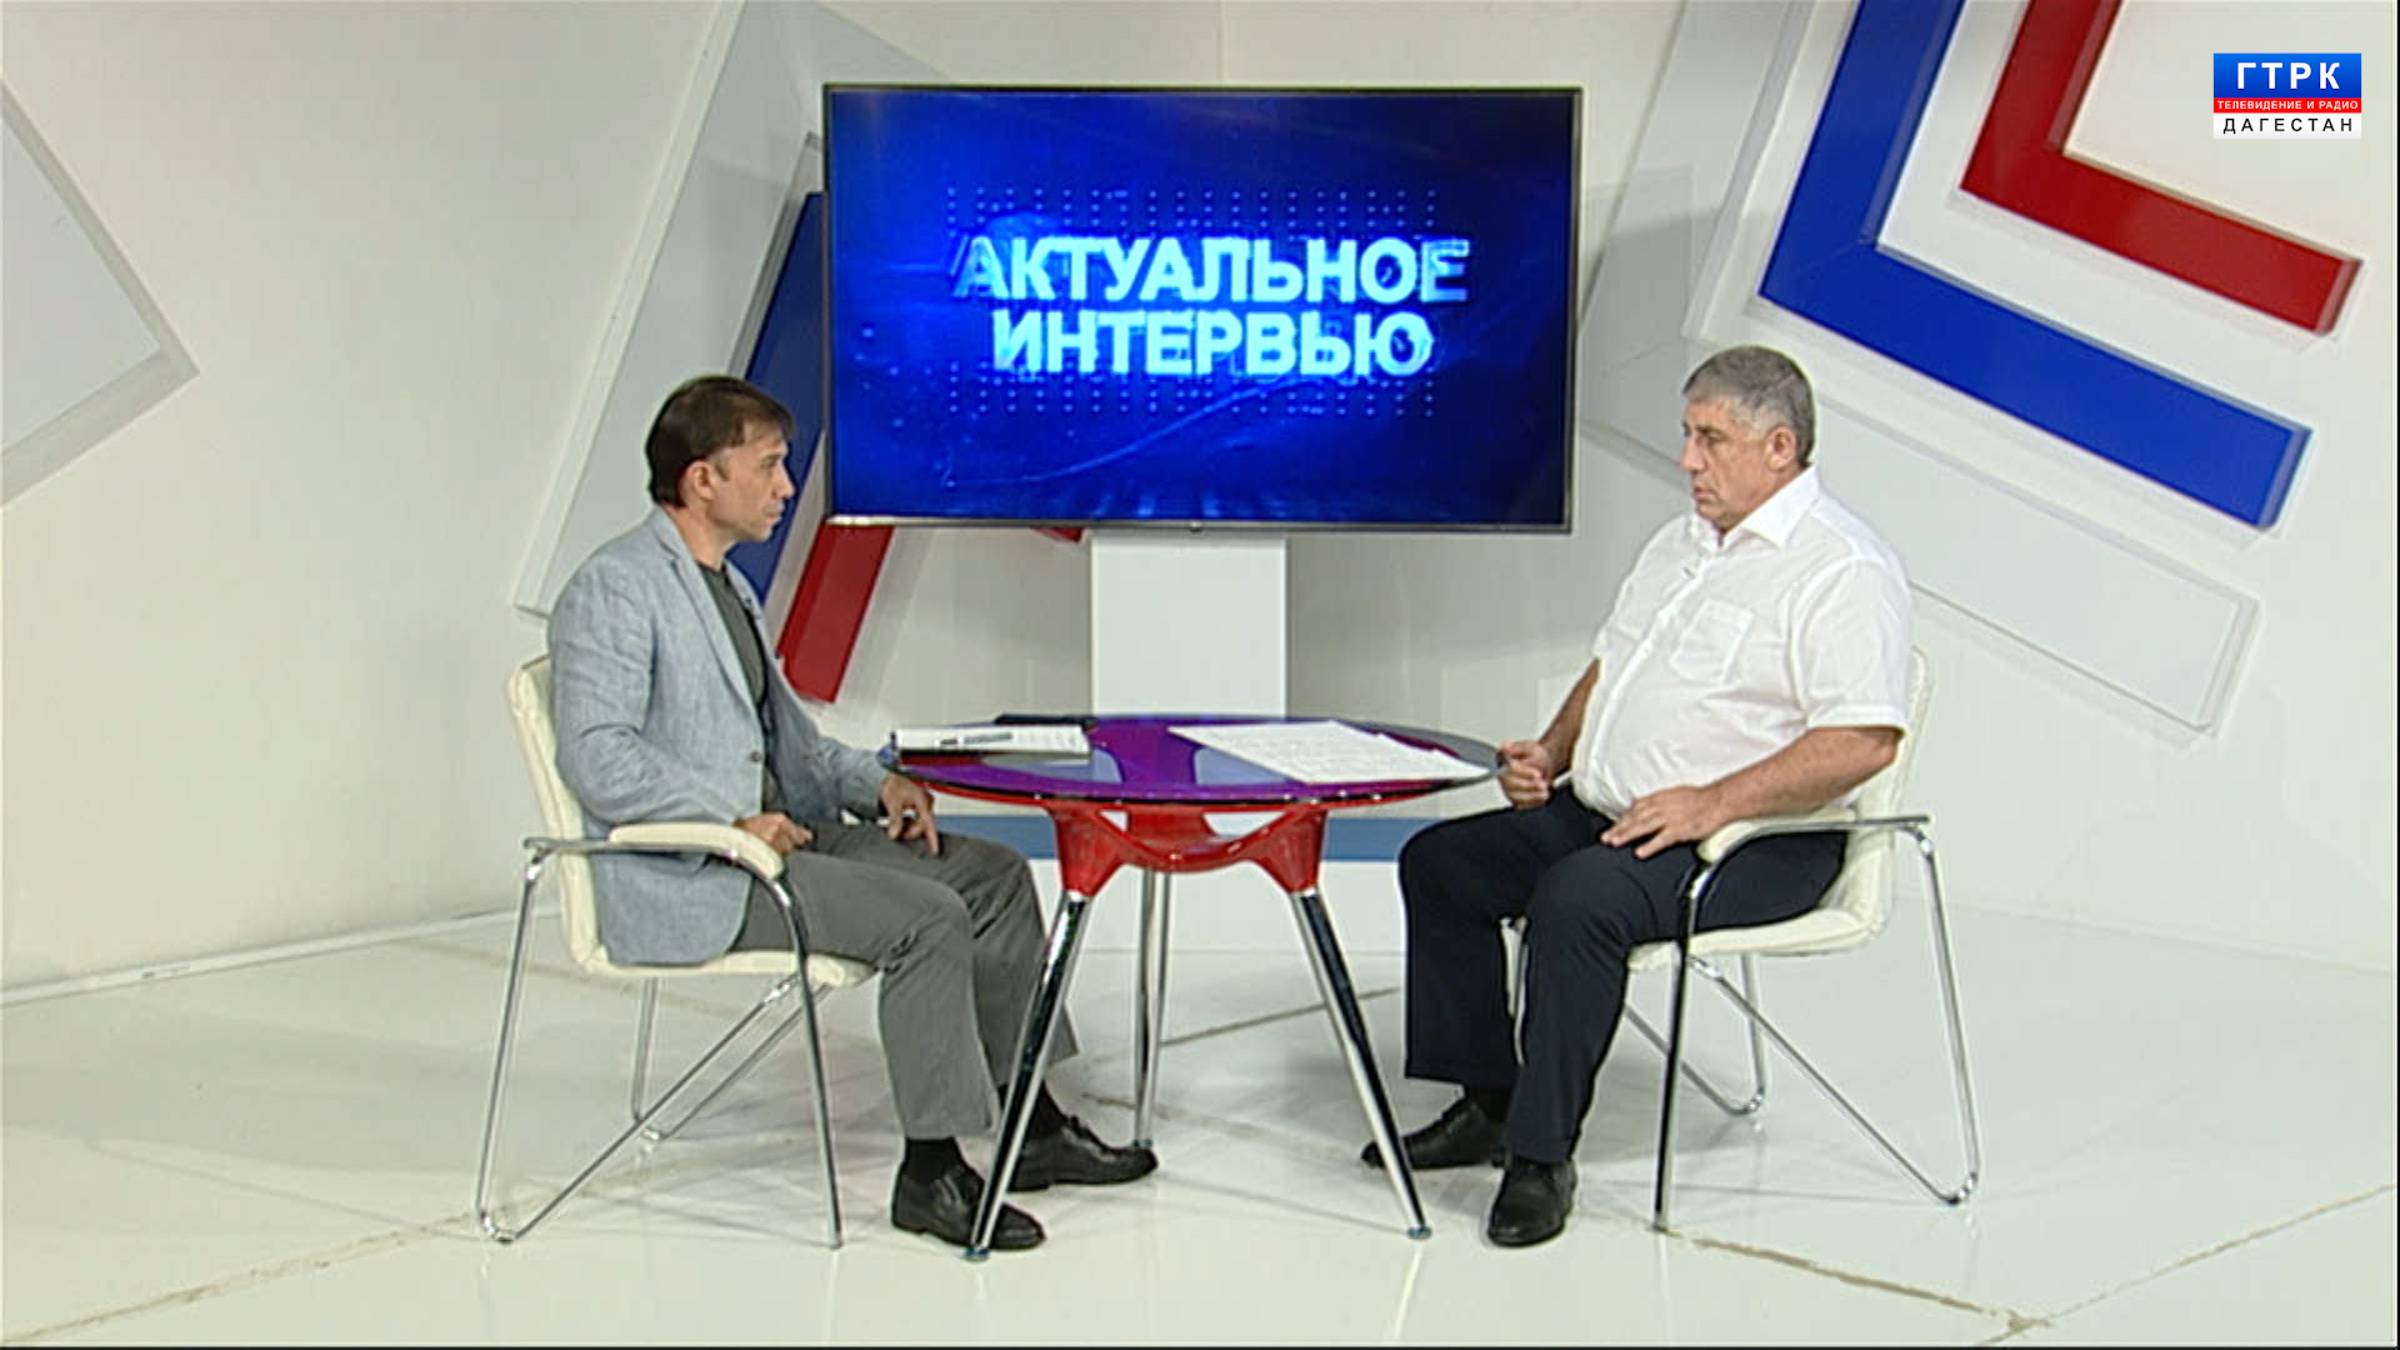 Актуальное интервью, Н.Асваров "Терракт"  23.06.24 г